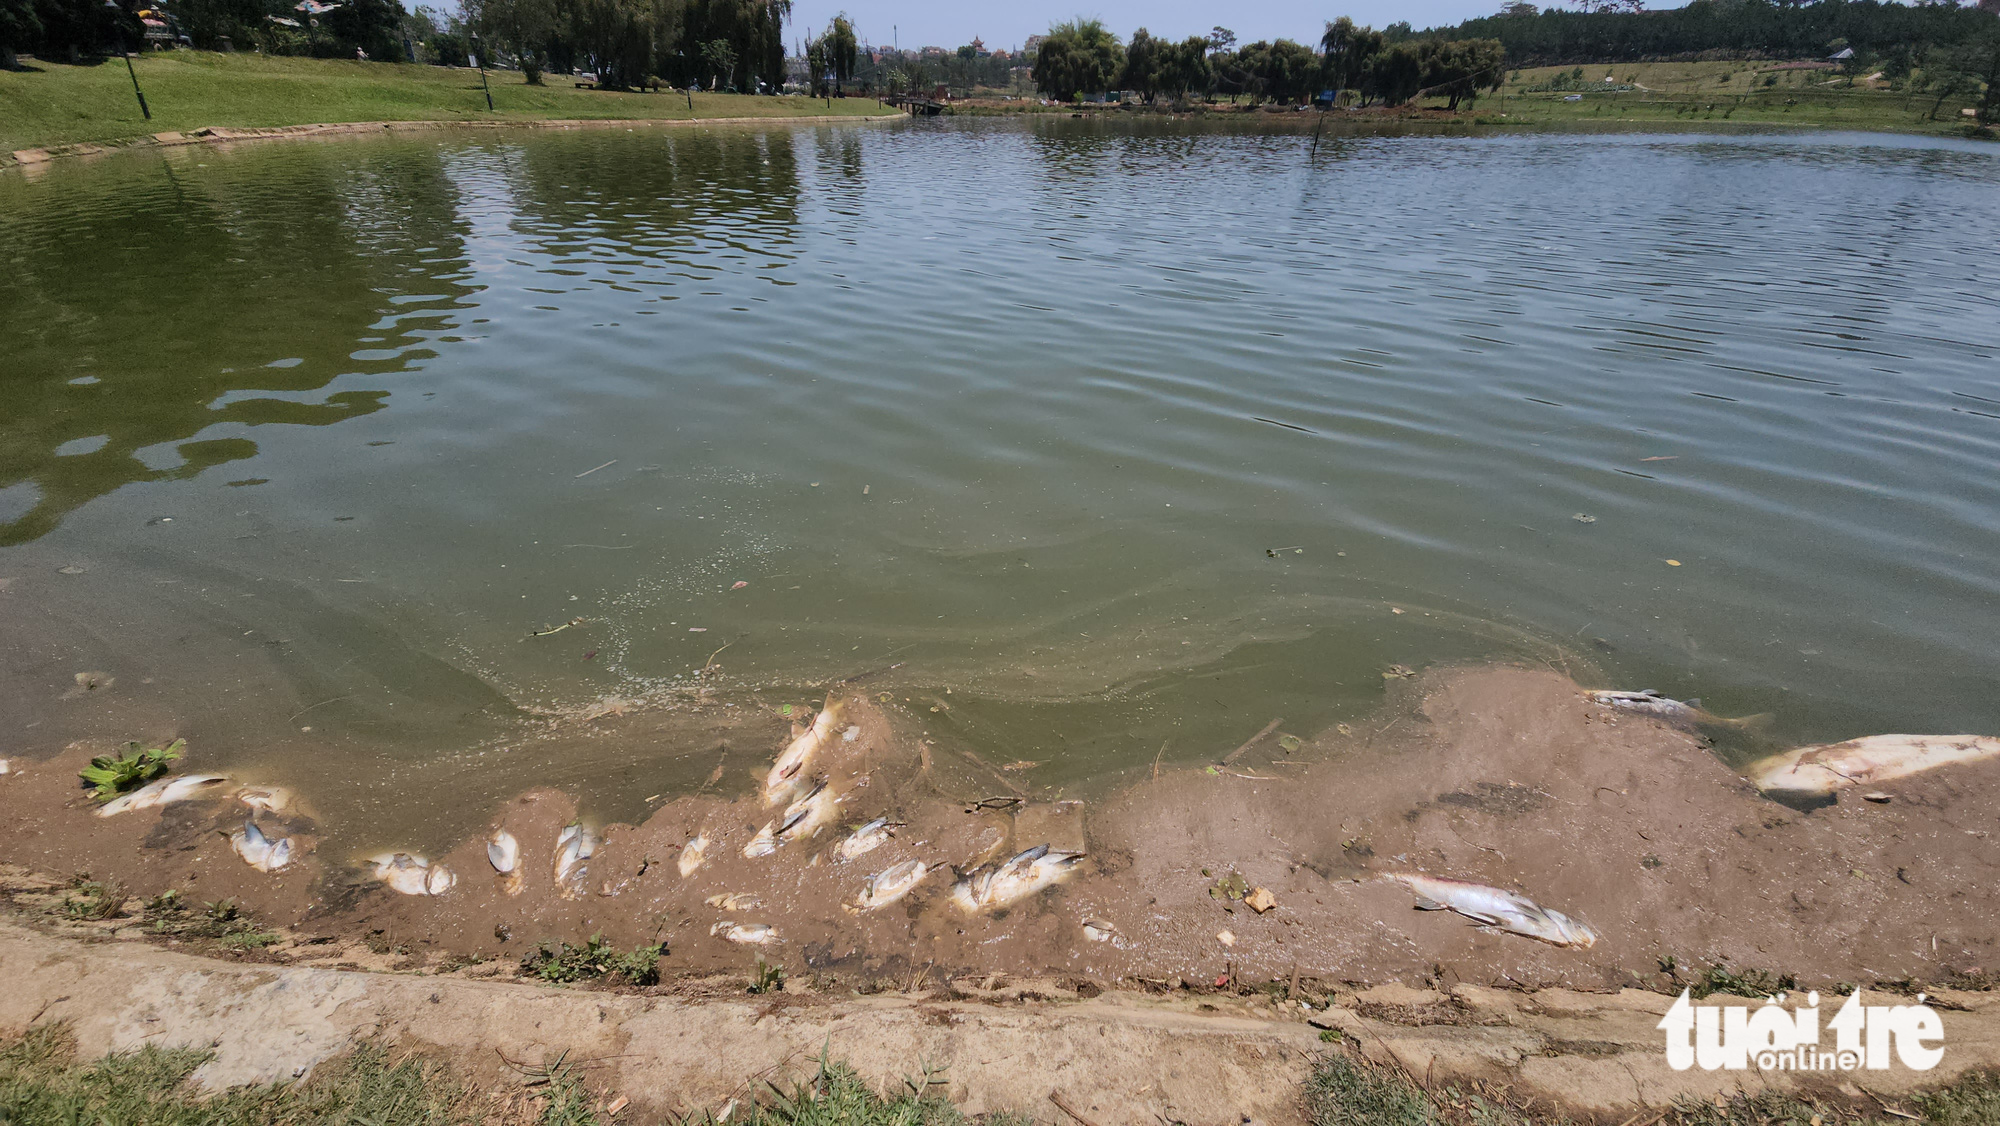 Cá chết hàng loạt ở hồ Xuân Hương - Đà Lạt, công nhân phải gom bằng xe tải - Ảnh 2.